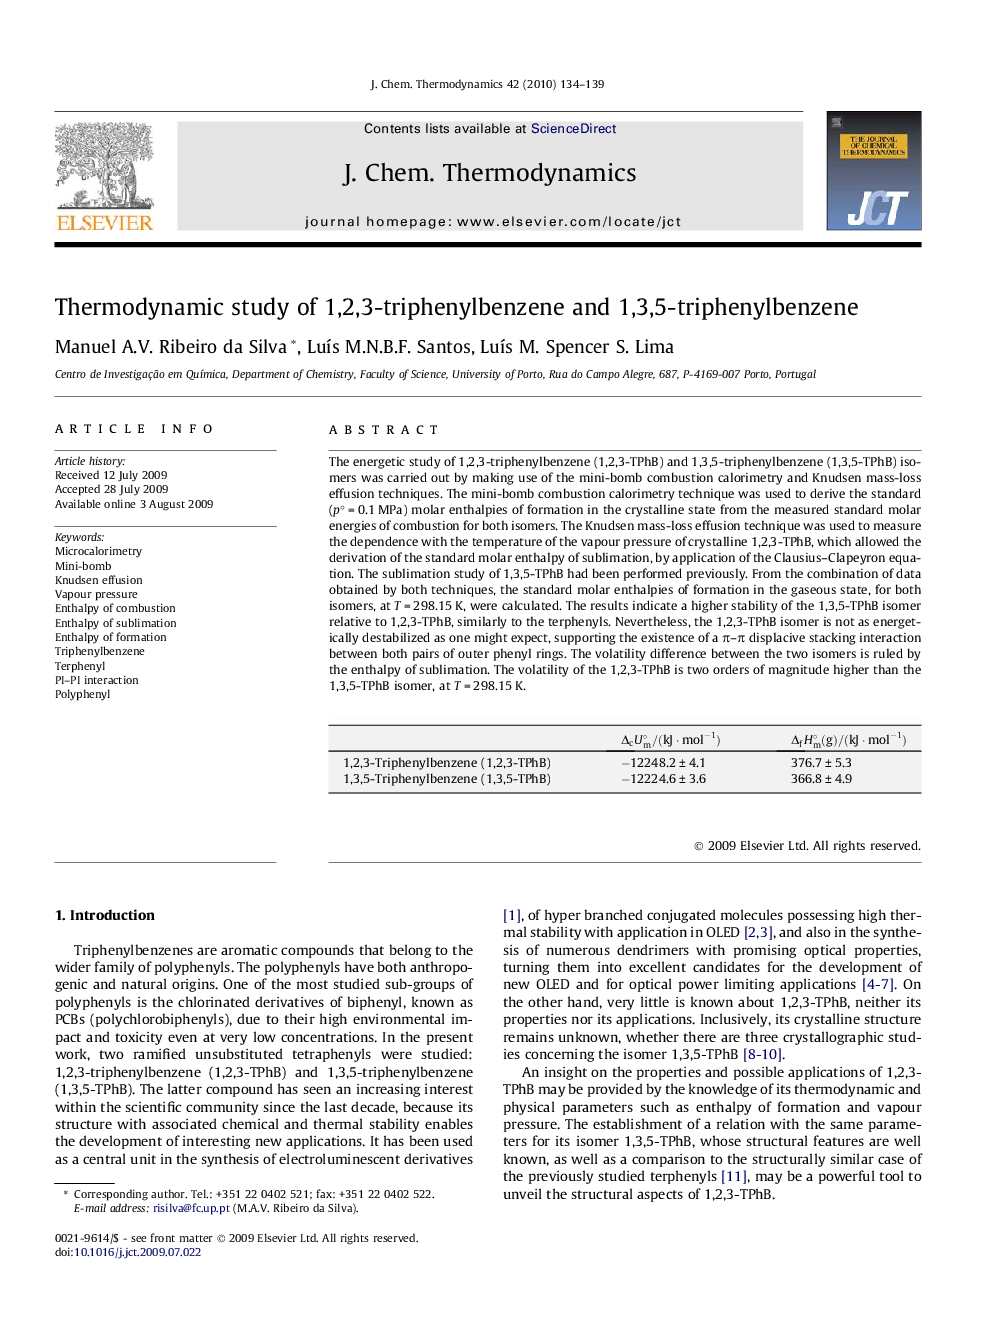 Thermodynamic study of 1,2,3-triphenylbenzene and 1,3,5-triphenylbenzene